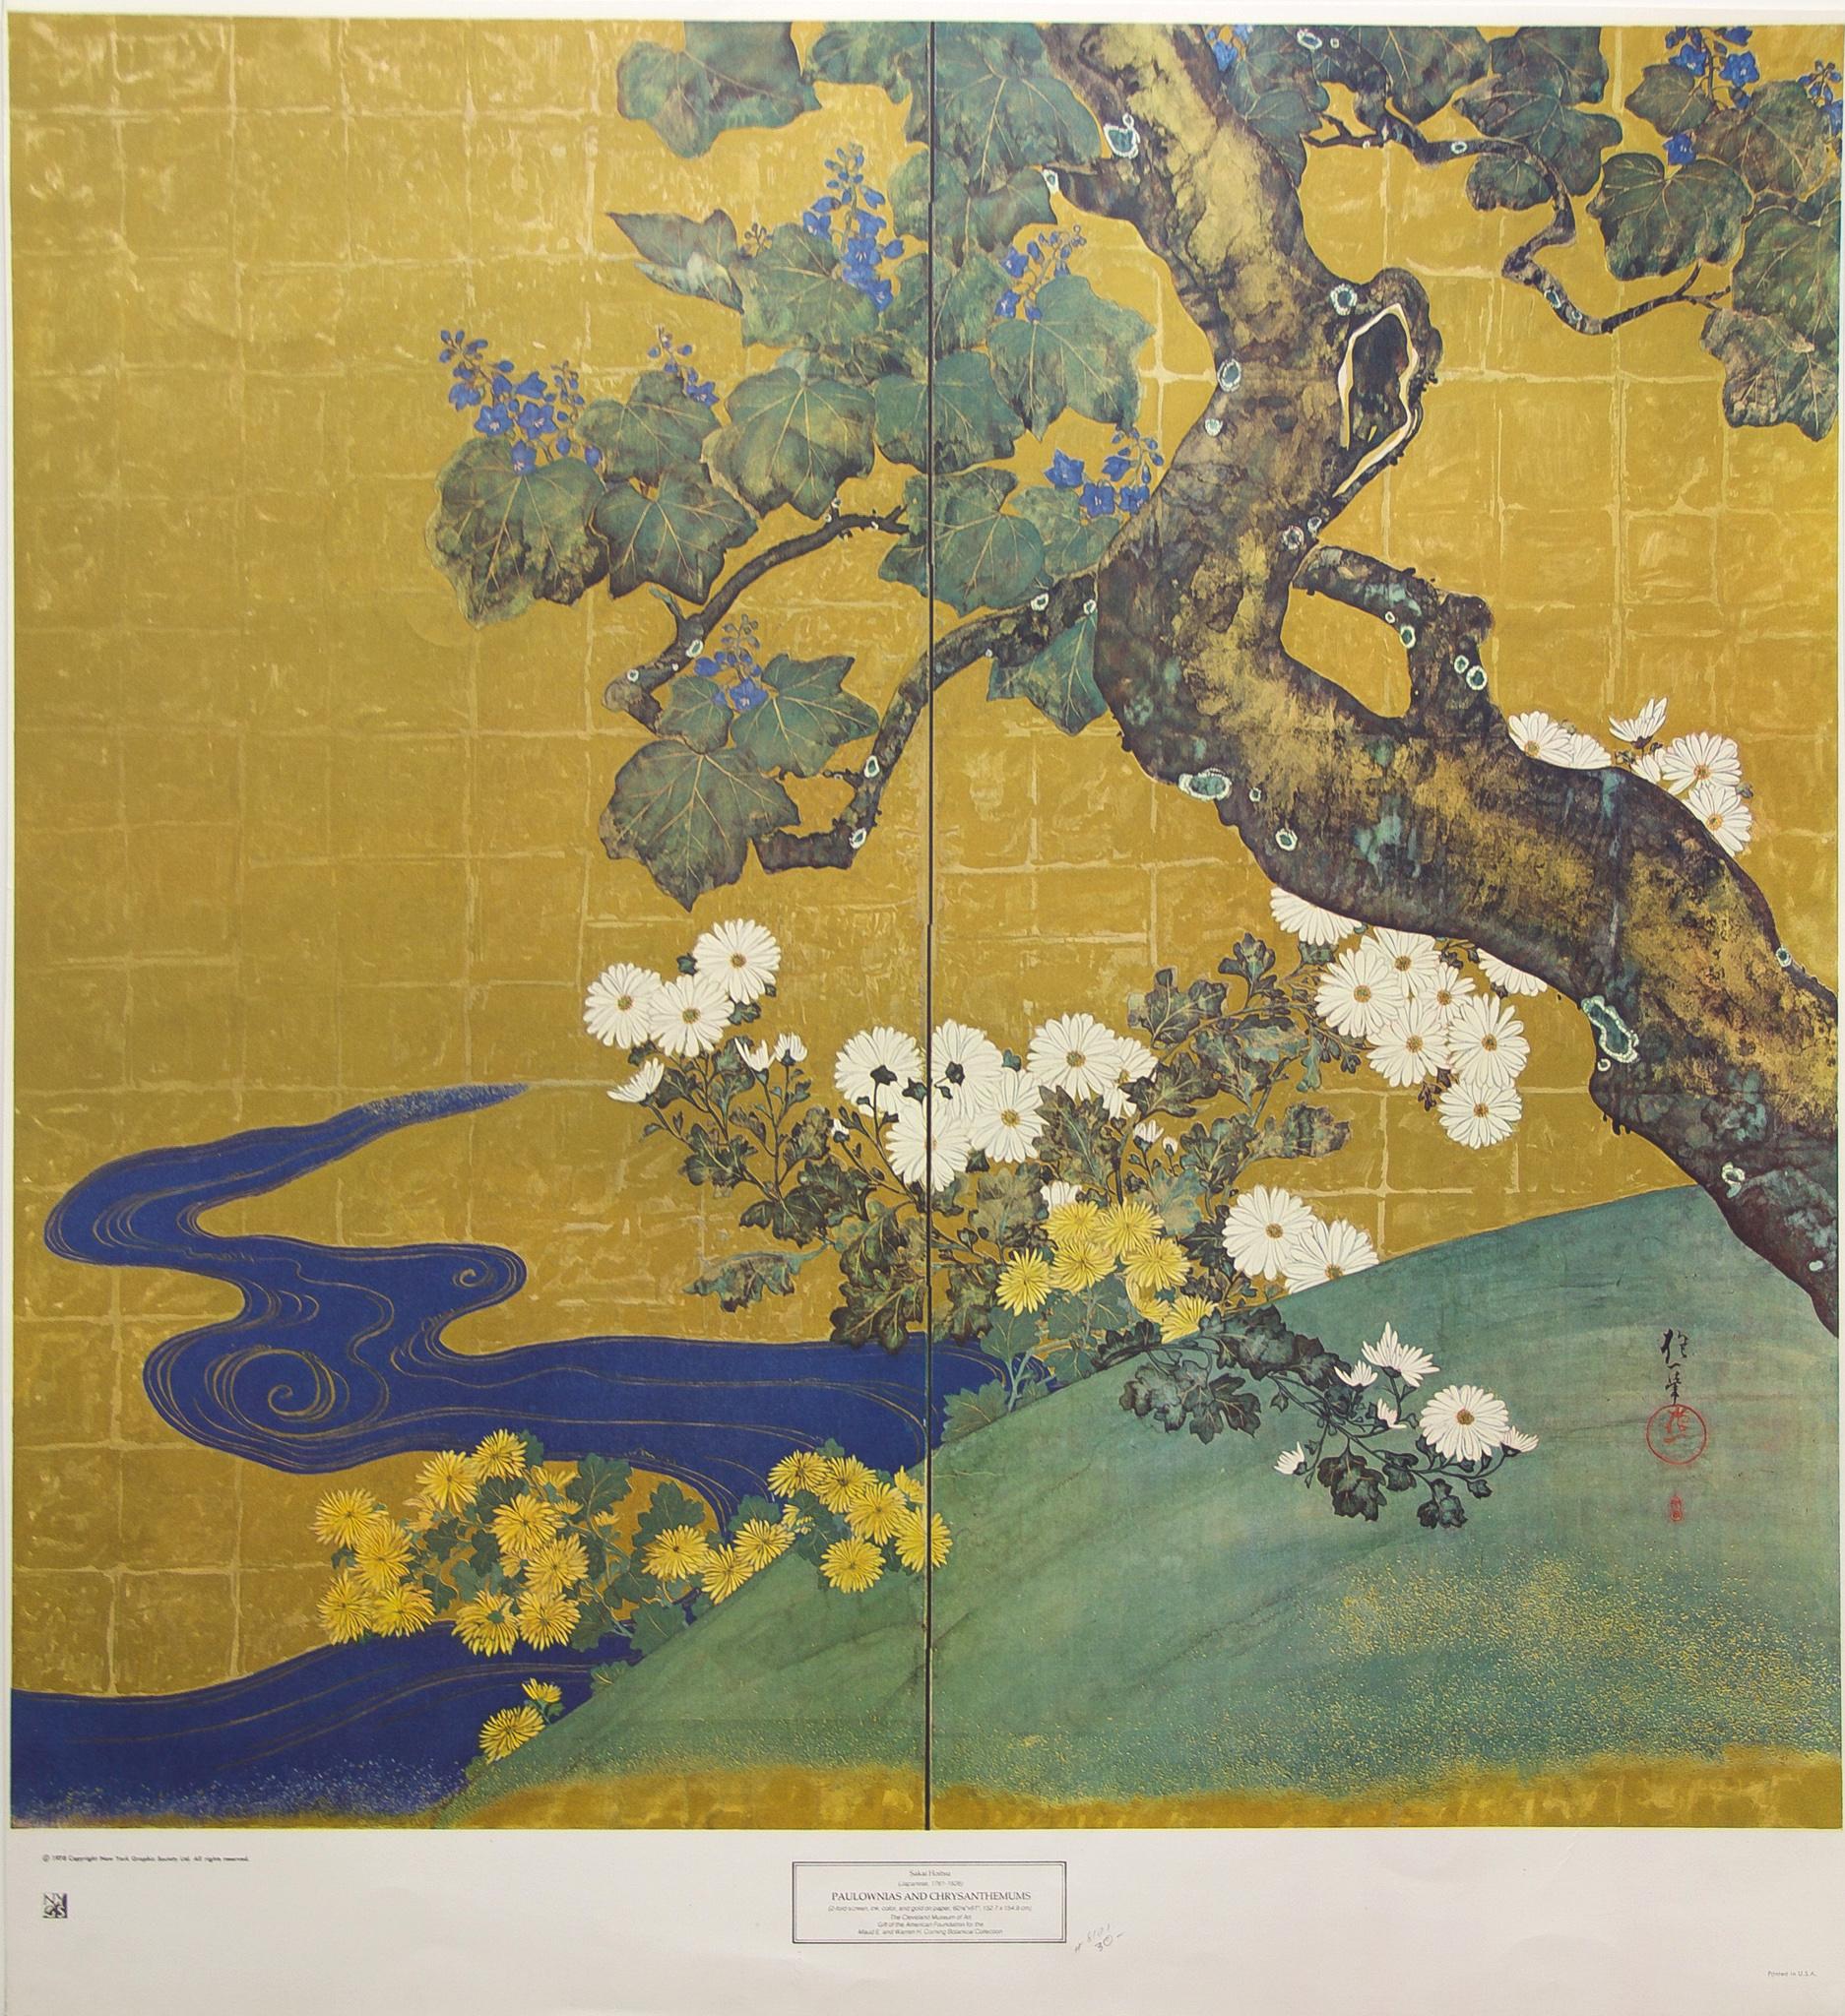 Sakai Hoitsu Landscape Print – "Paulownien und Chrysanthemen" von Sakai Hōitsu